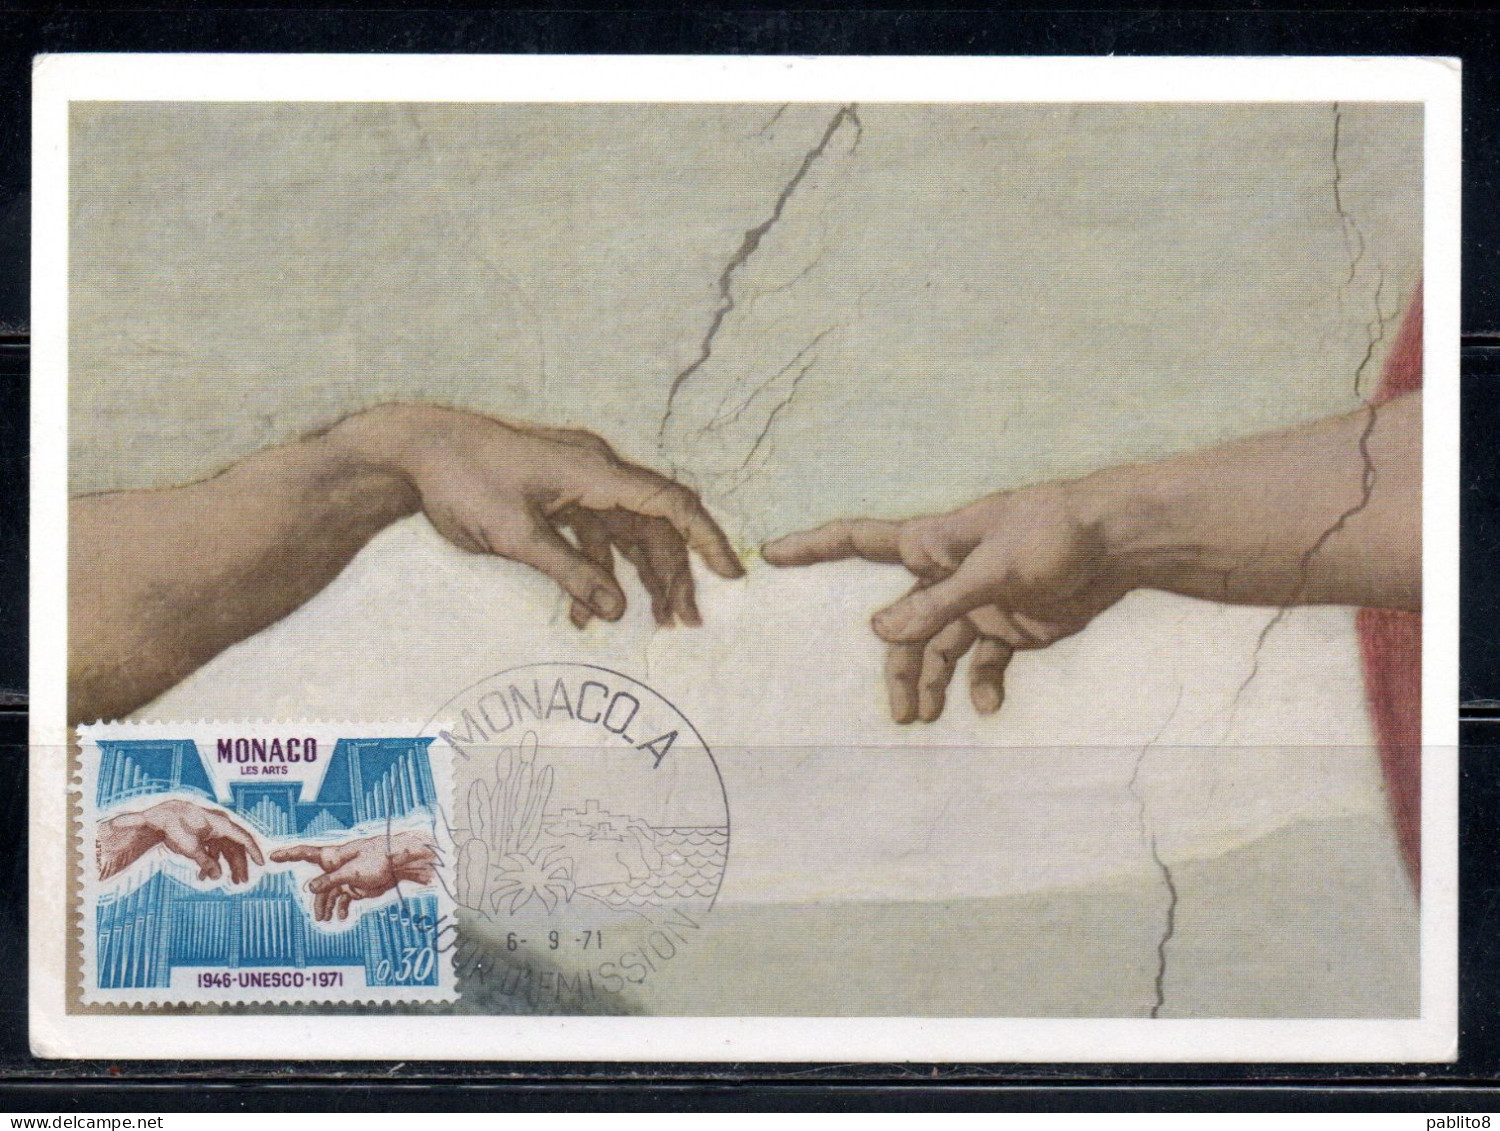 PRINCIPAUTE DE MONACO 1971 ANNIVERSAIRE L'UNESCO ARTS ORGAN PIPES MICHELANGELO'S CREATION OF ADAM 30c MAXIMUM MAXI CARD - Cartoline Maximum